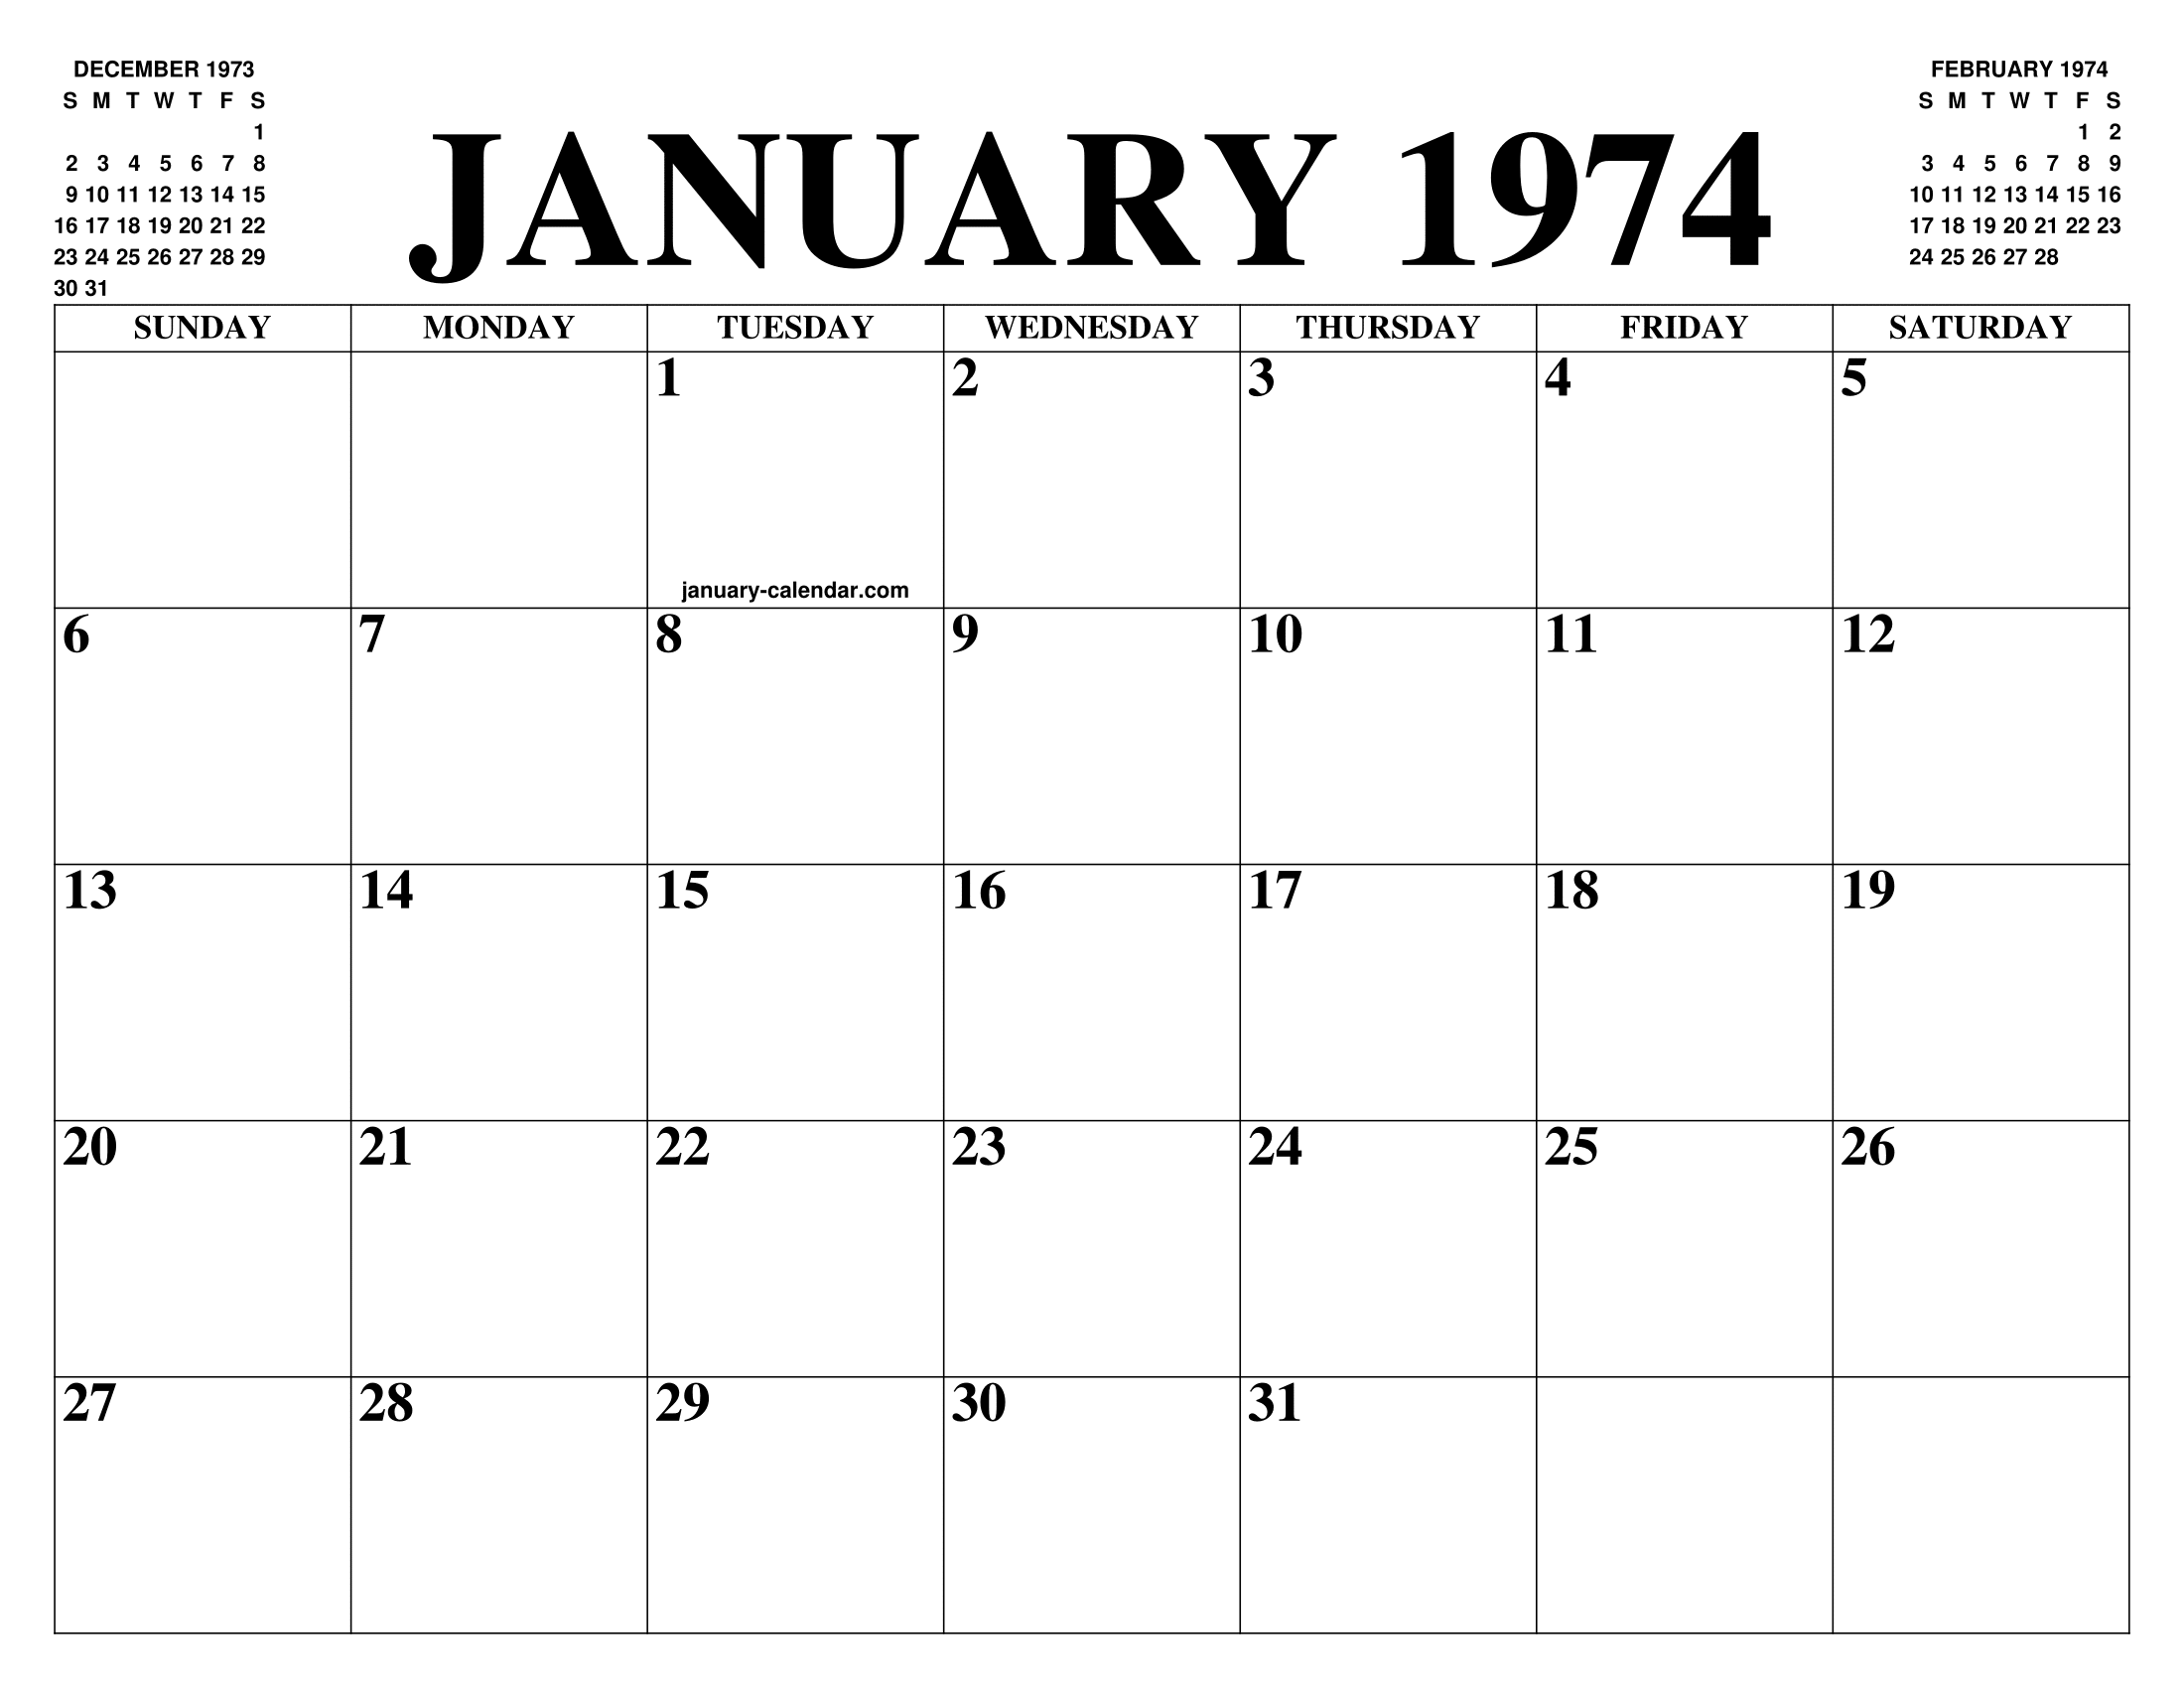 calendar 1973 january grupocordial com br